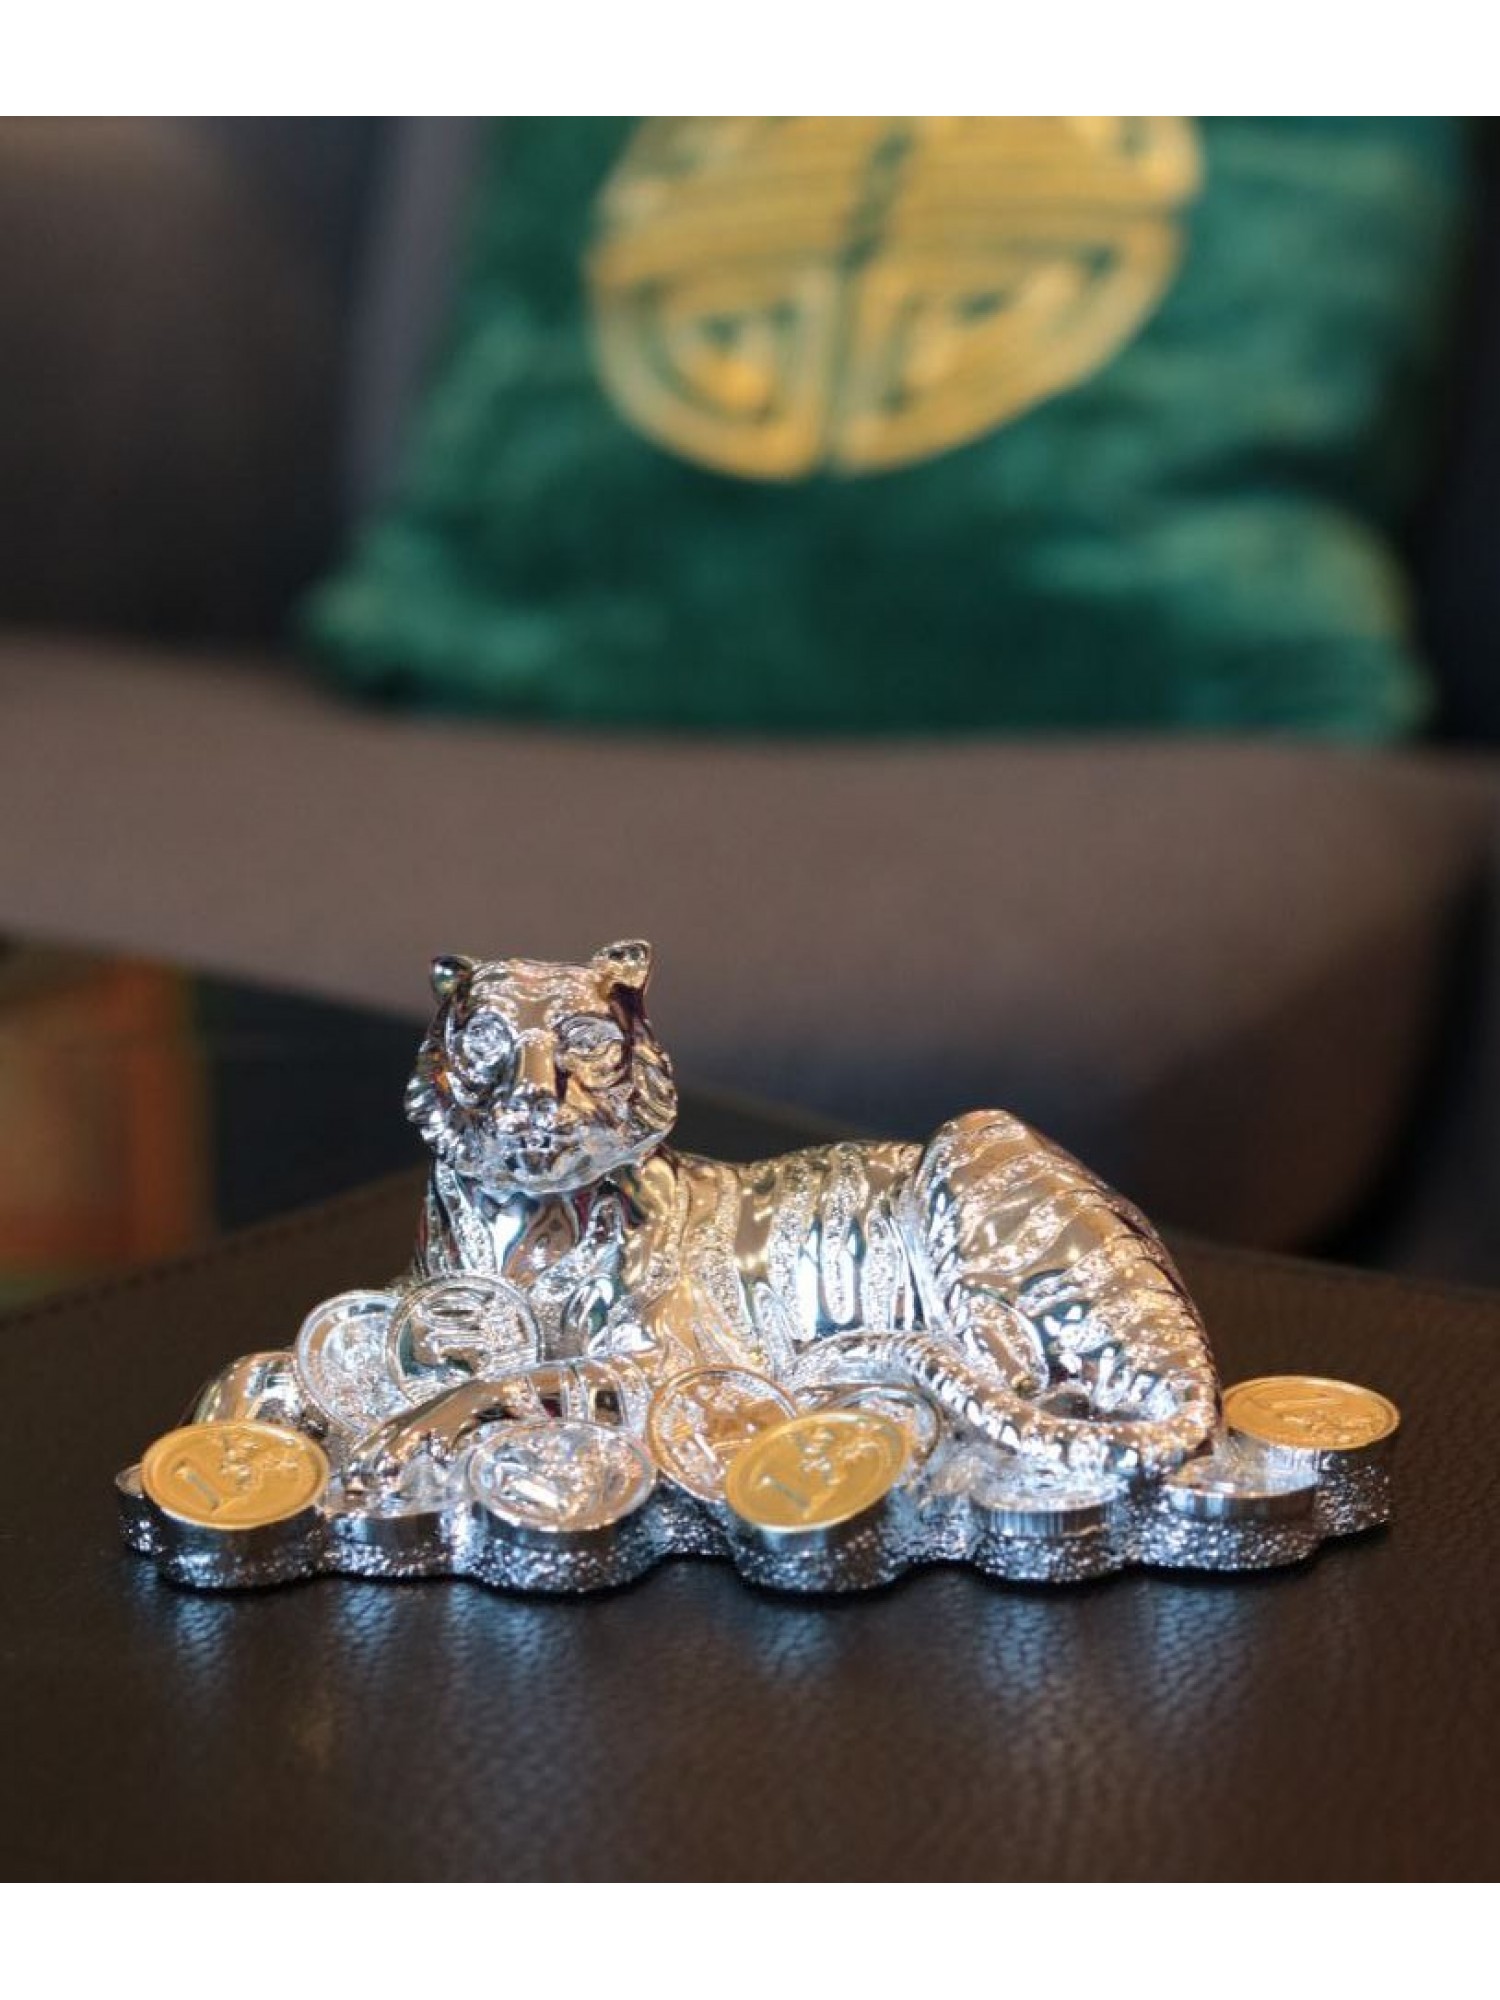 Статуэтка "Тигр на монетах" из СЕРЕБРА защитит Вас от недоброжелателей и наделит решительностью для достижения целей!